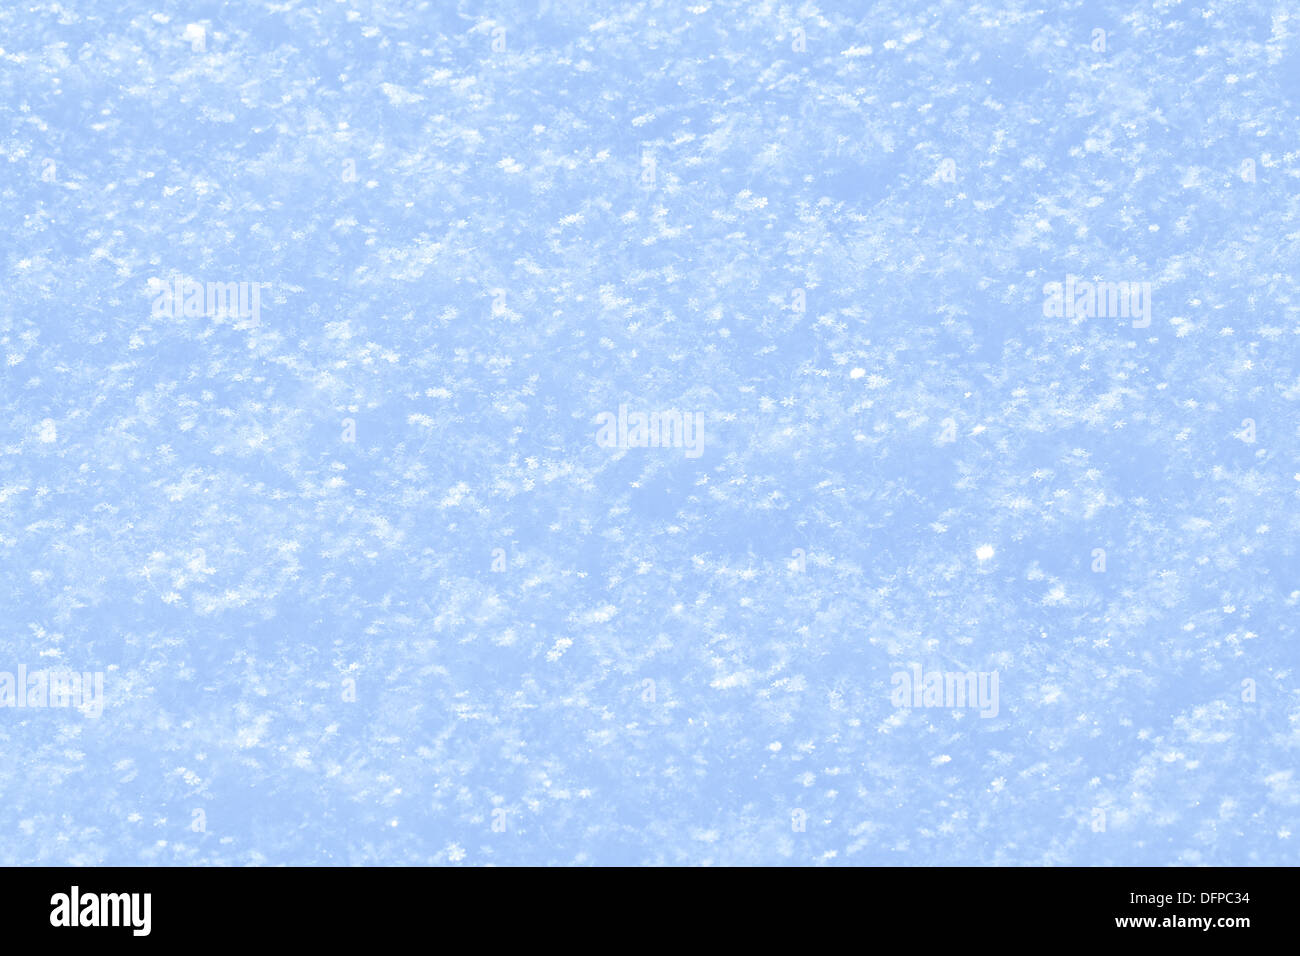 Blau glitzernden Schnee Hintergrund mit weißen kleinen Schneeflocken. Stockfoto